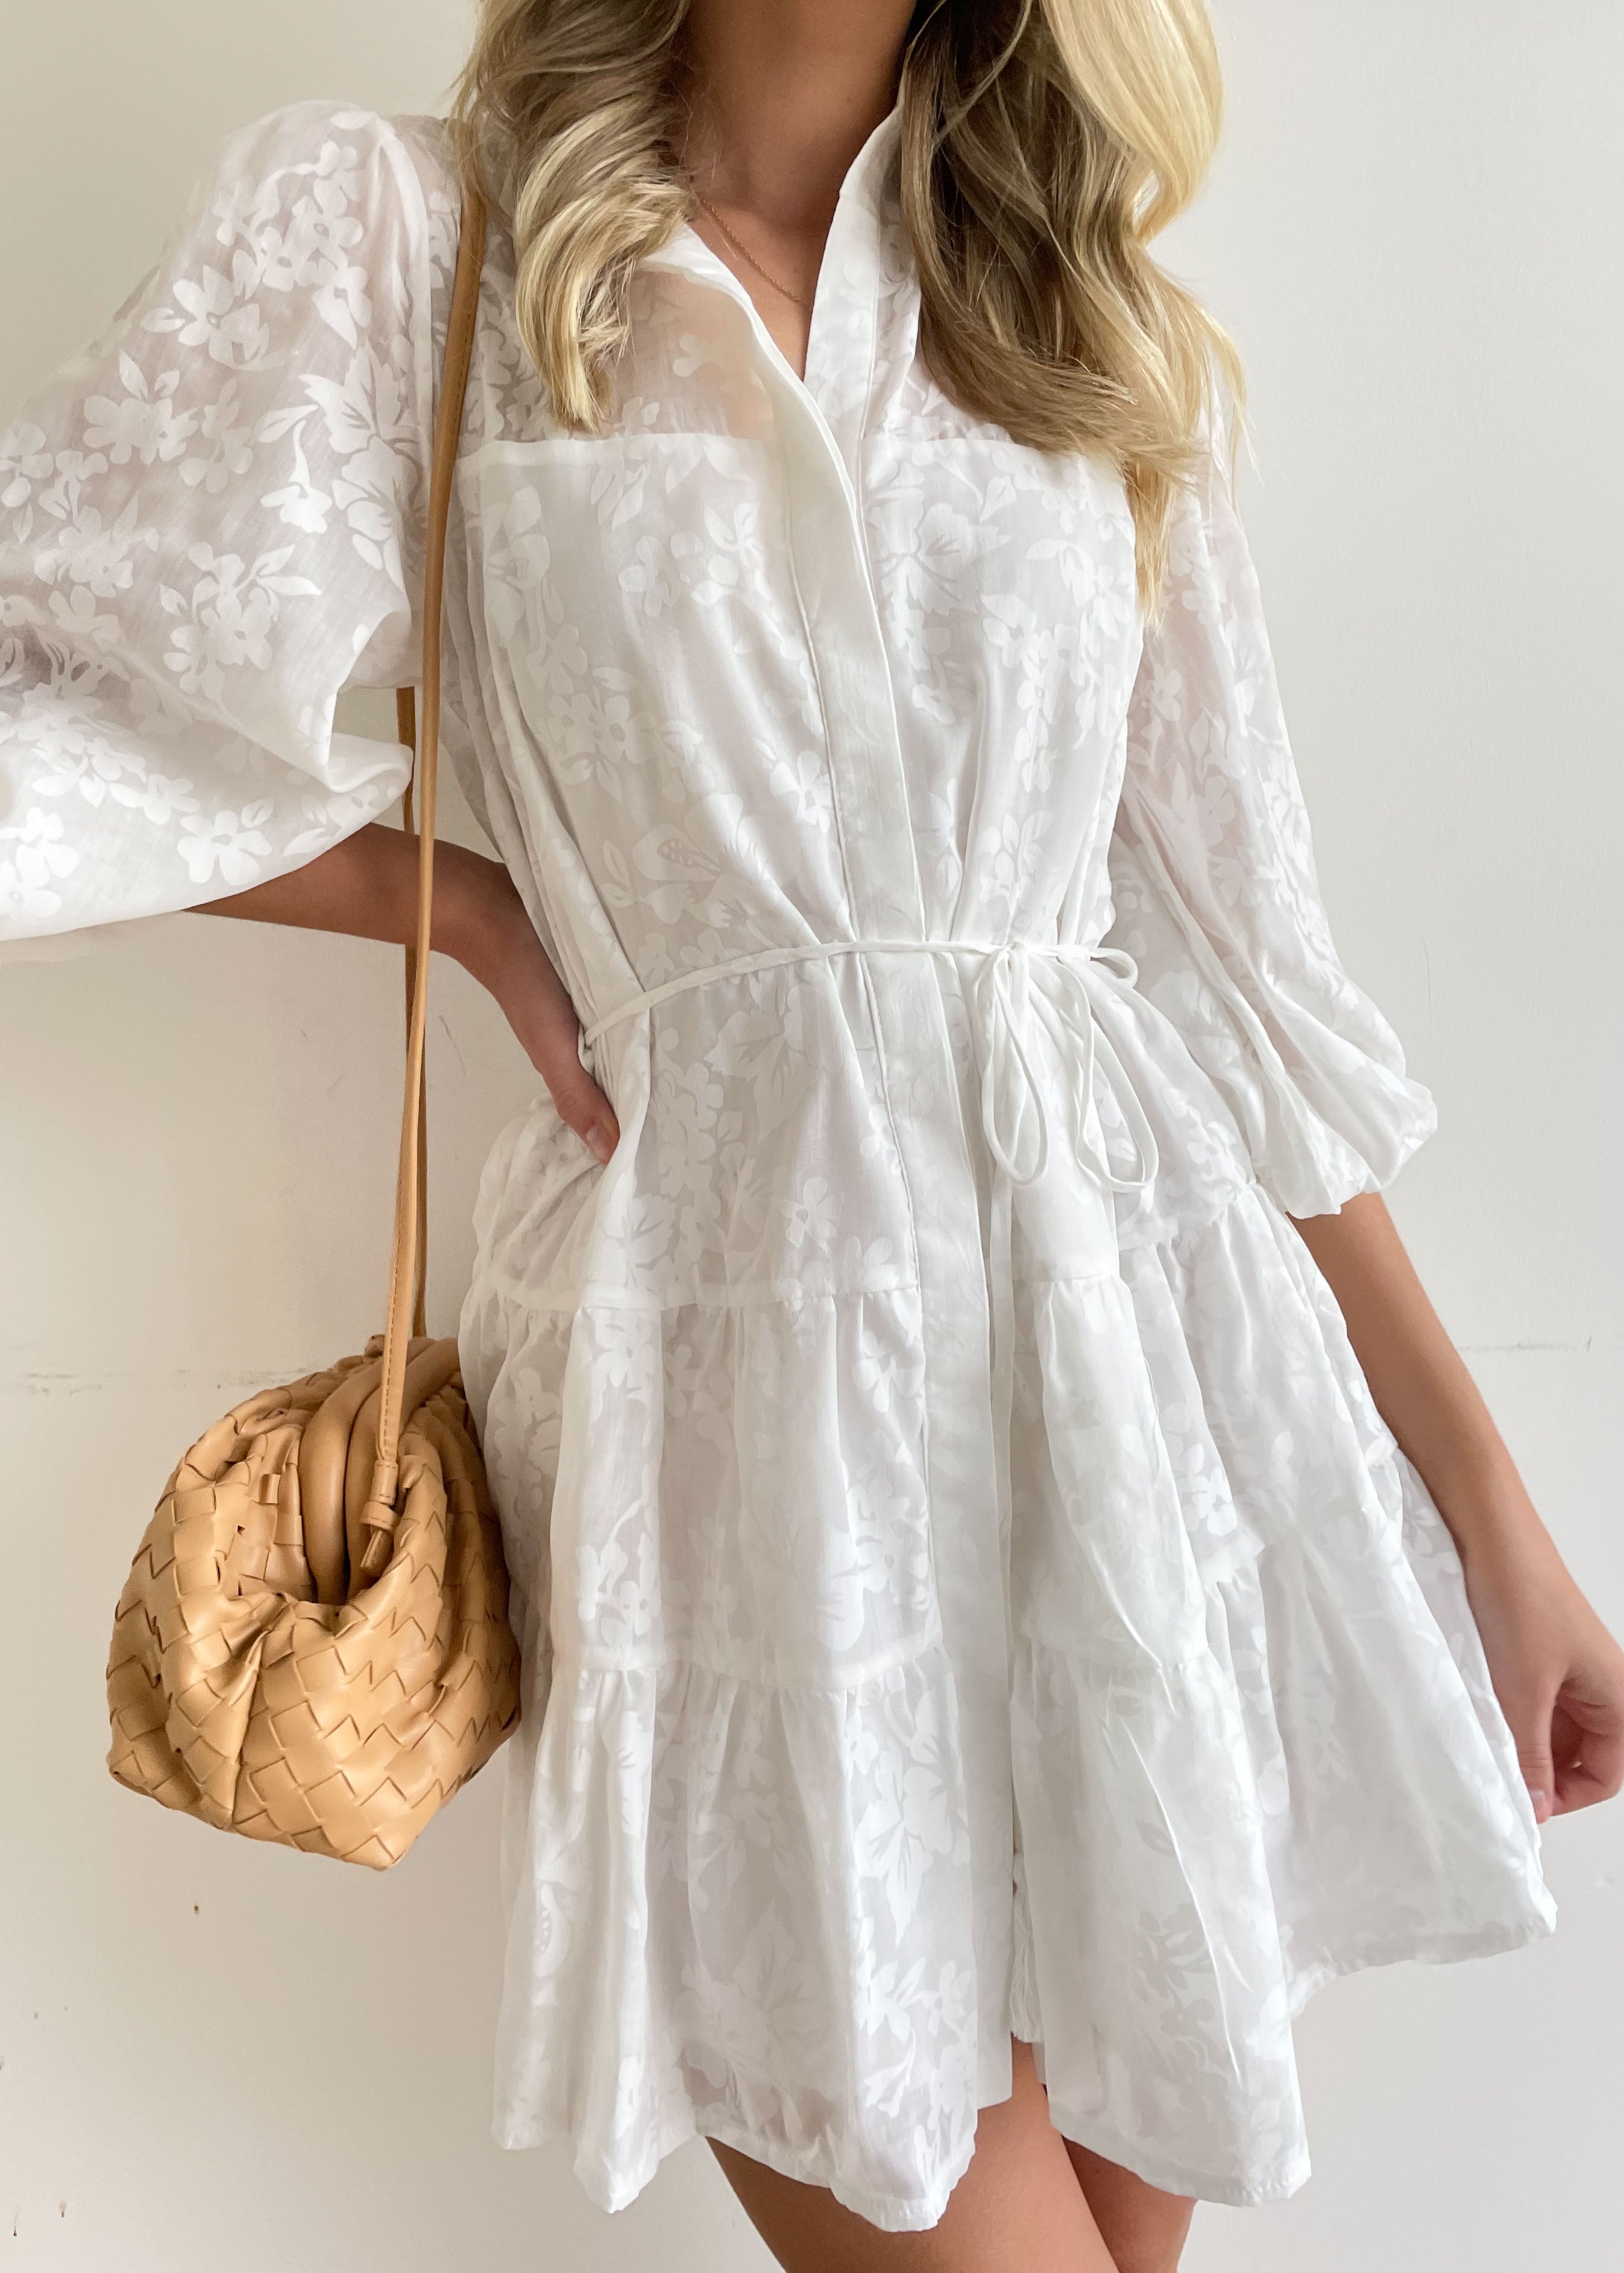 Matildah Dress - Off White